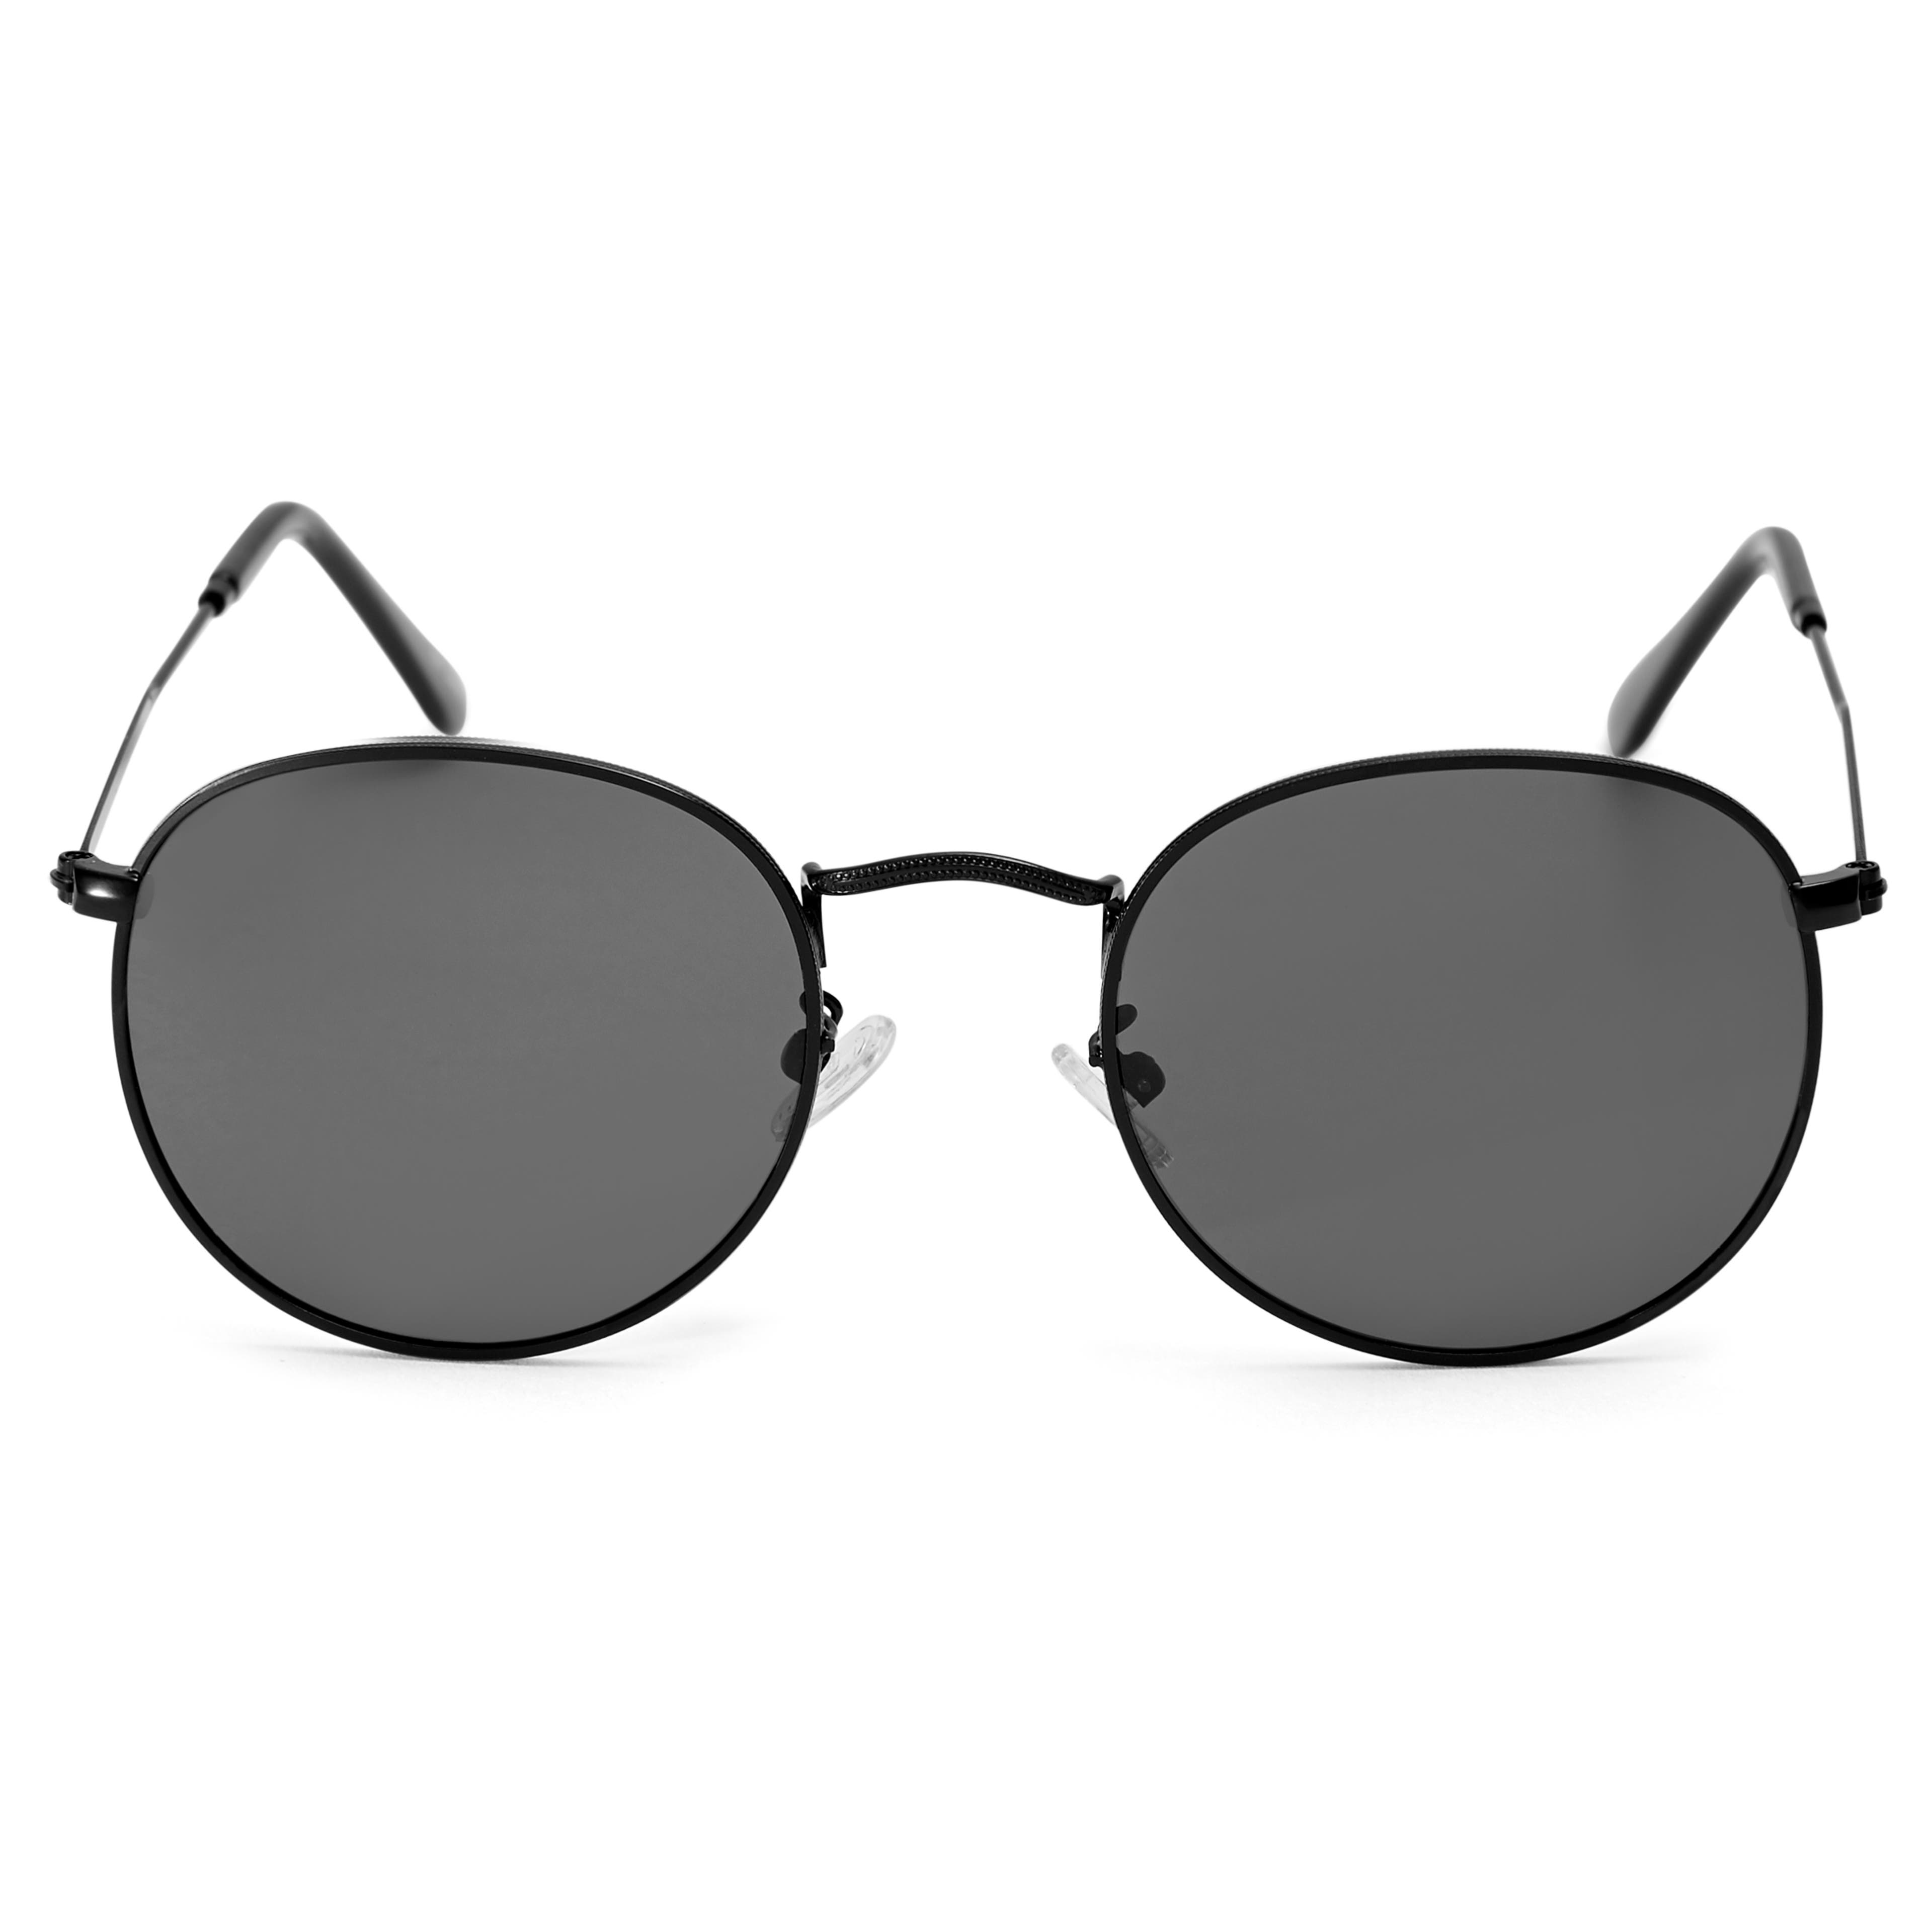 Dandy Komplett Schwarze Polarisierte Sonnenbrille